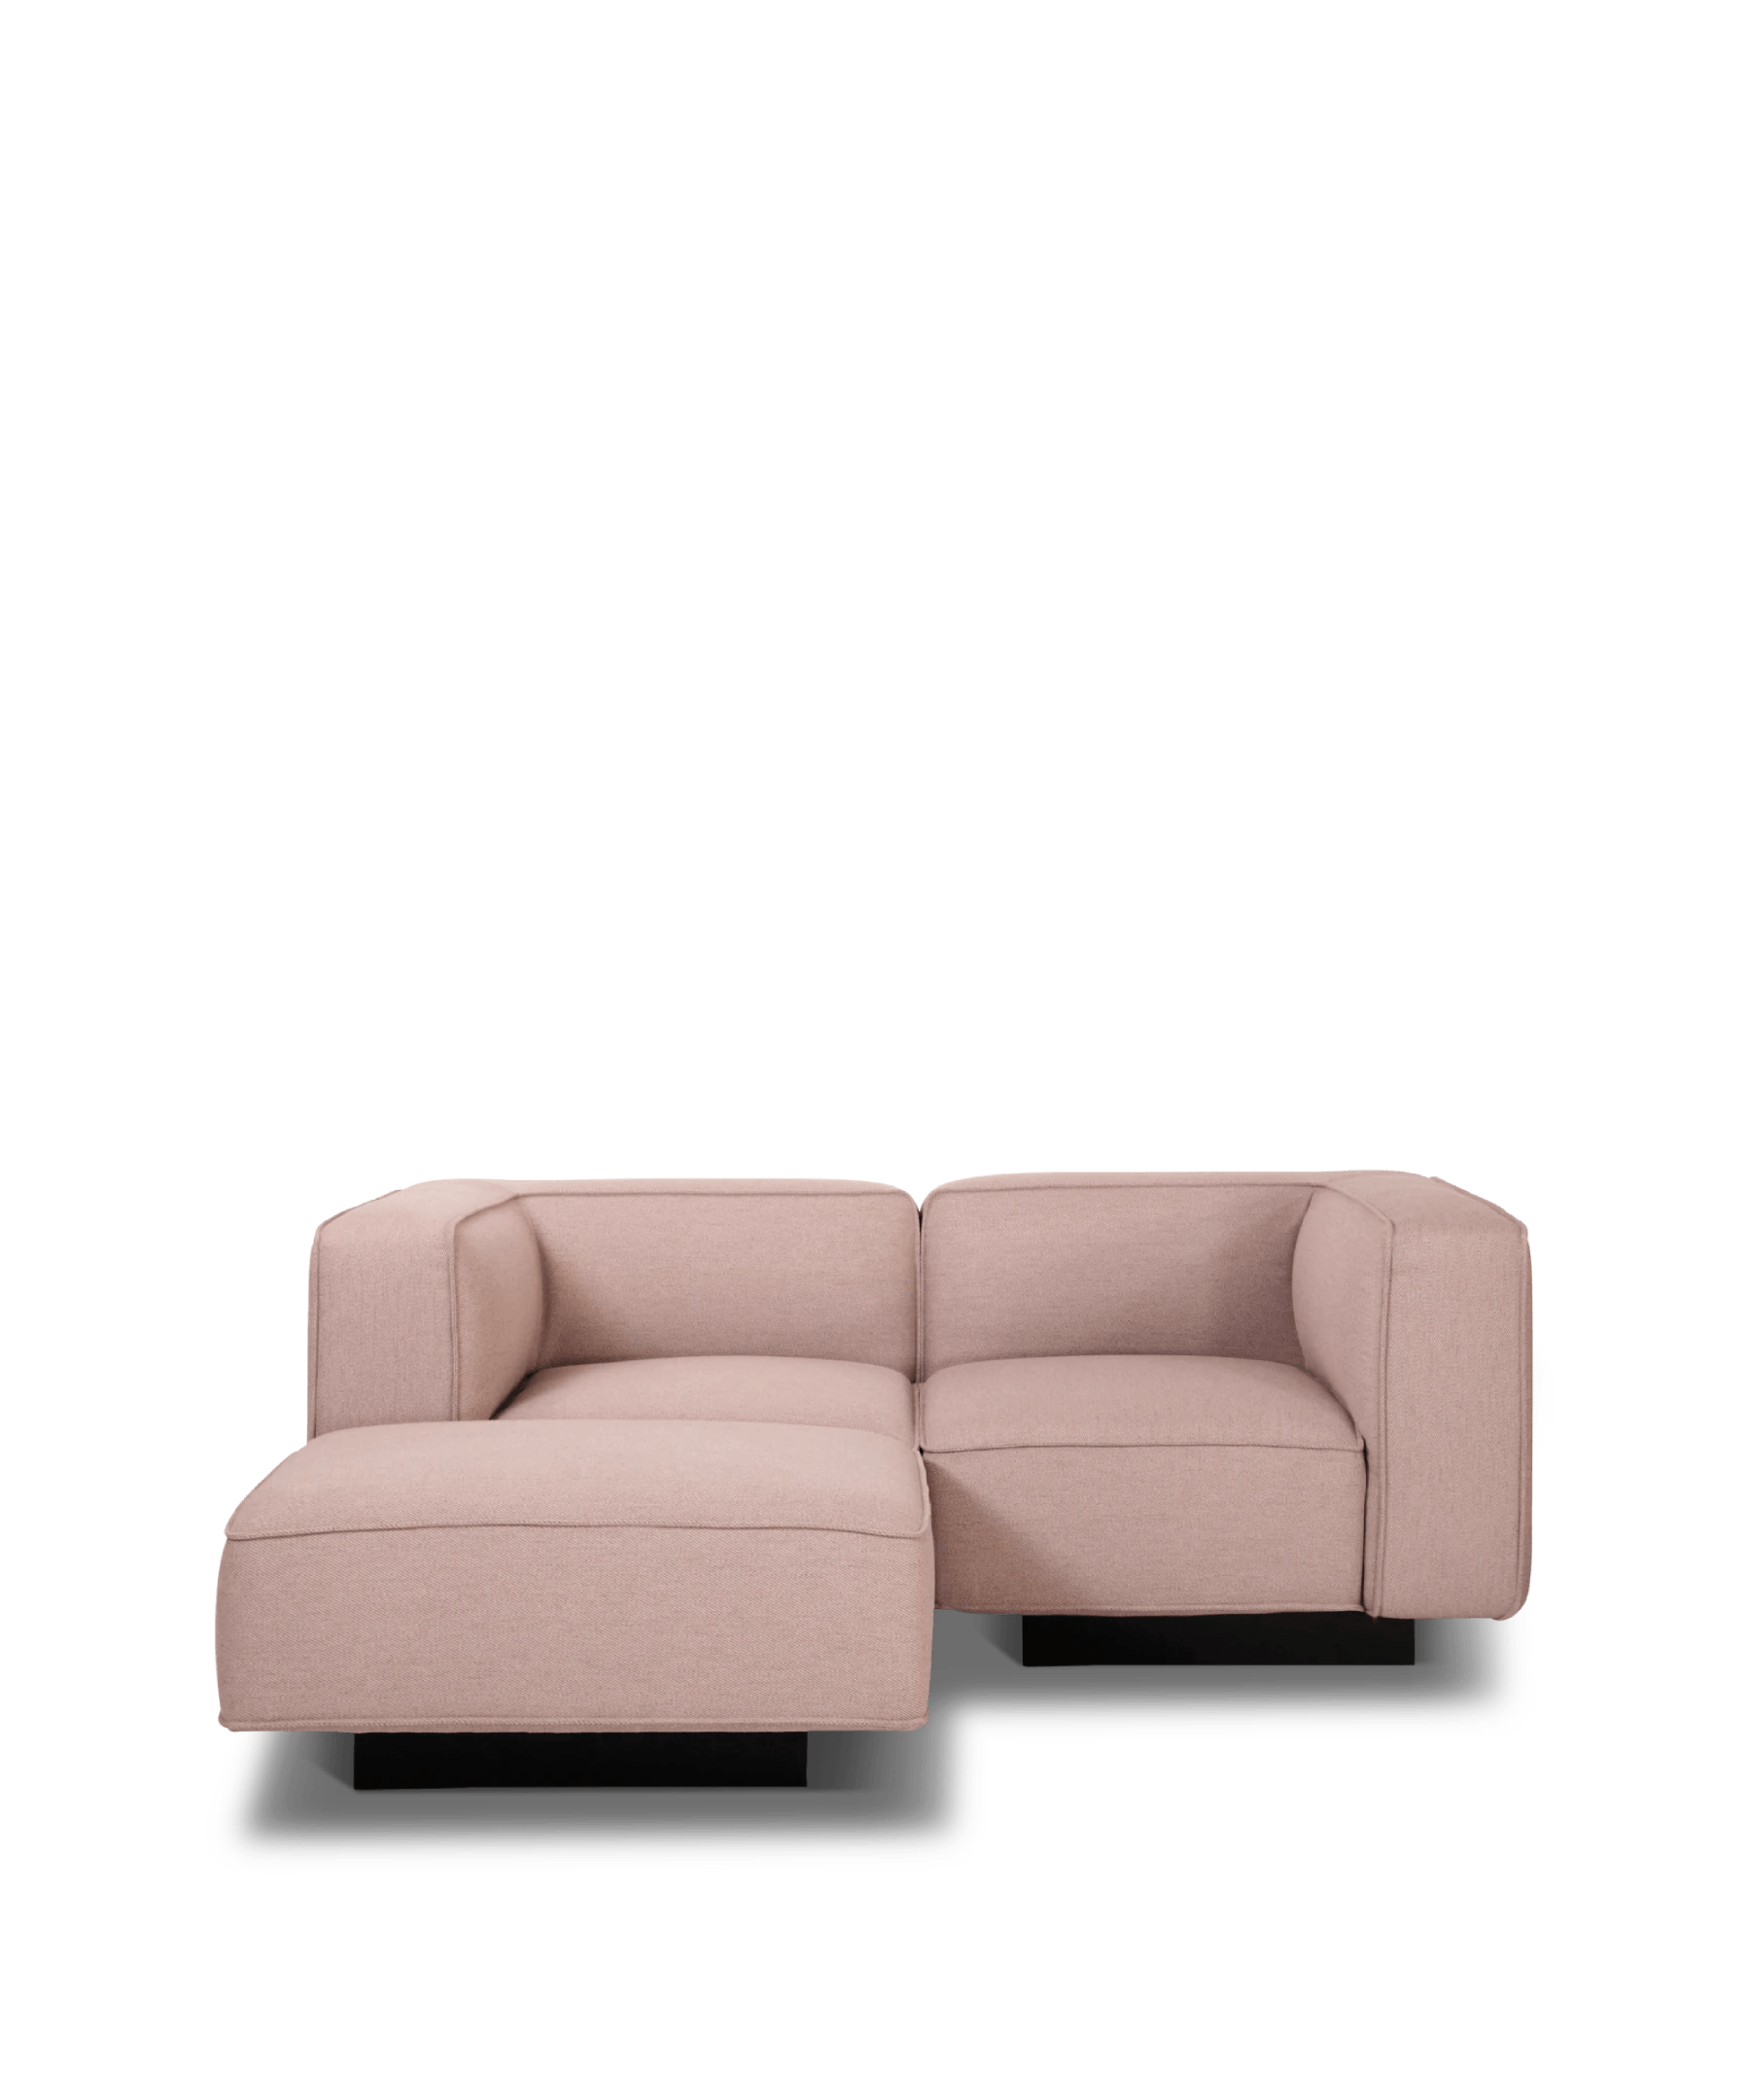 Utopia 2,5 personer sofa med chaiselong på sort sokkel fod og kasse design